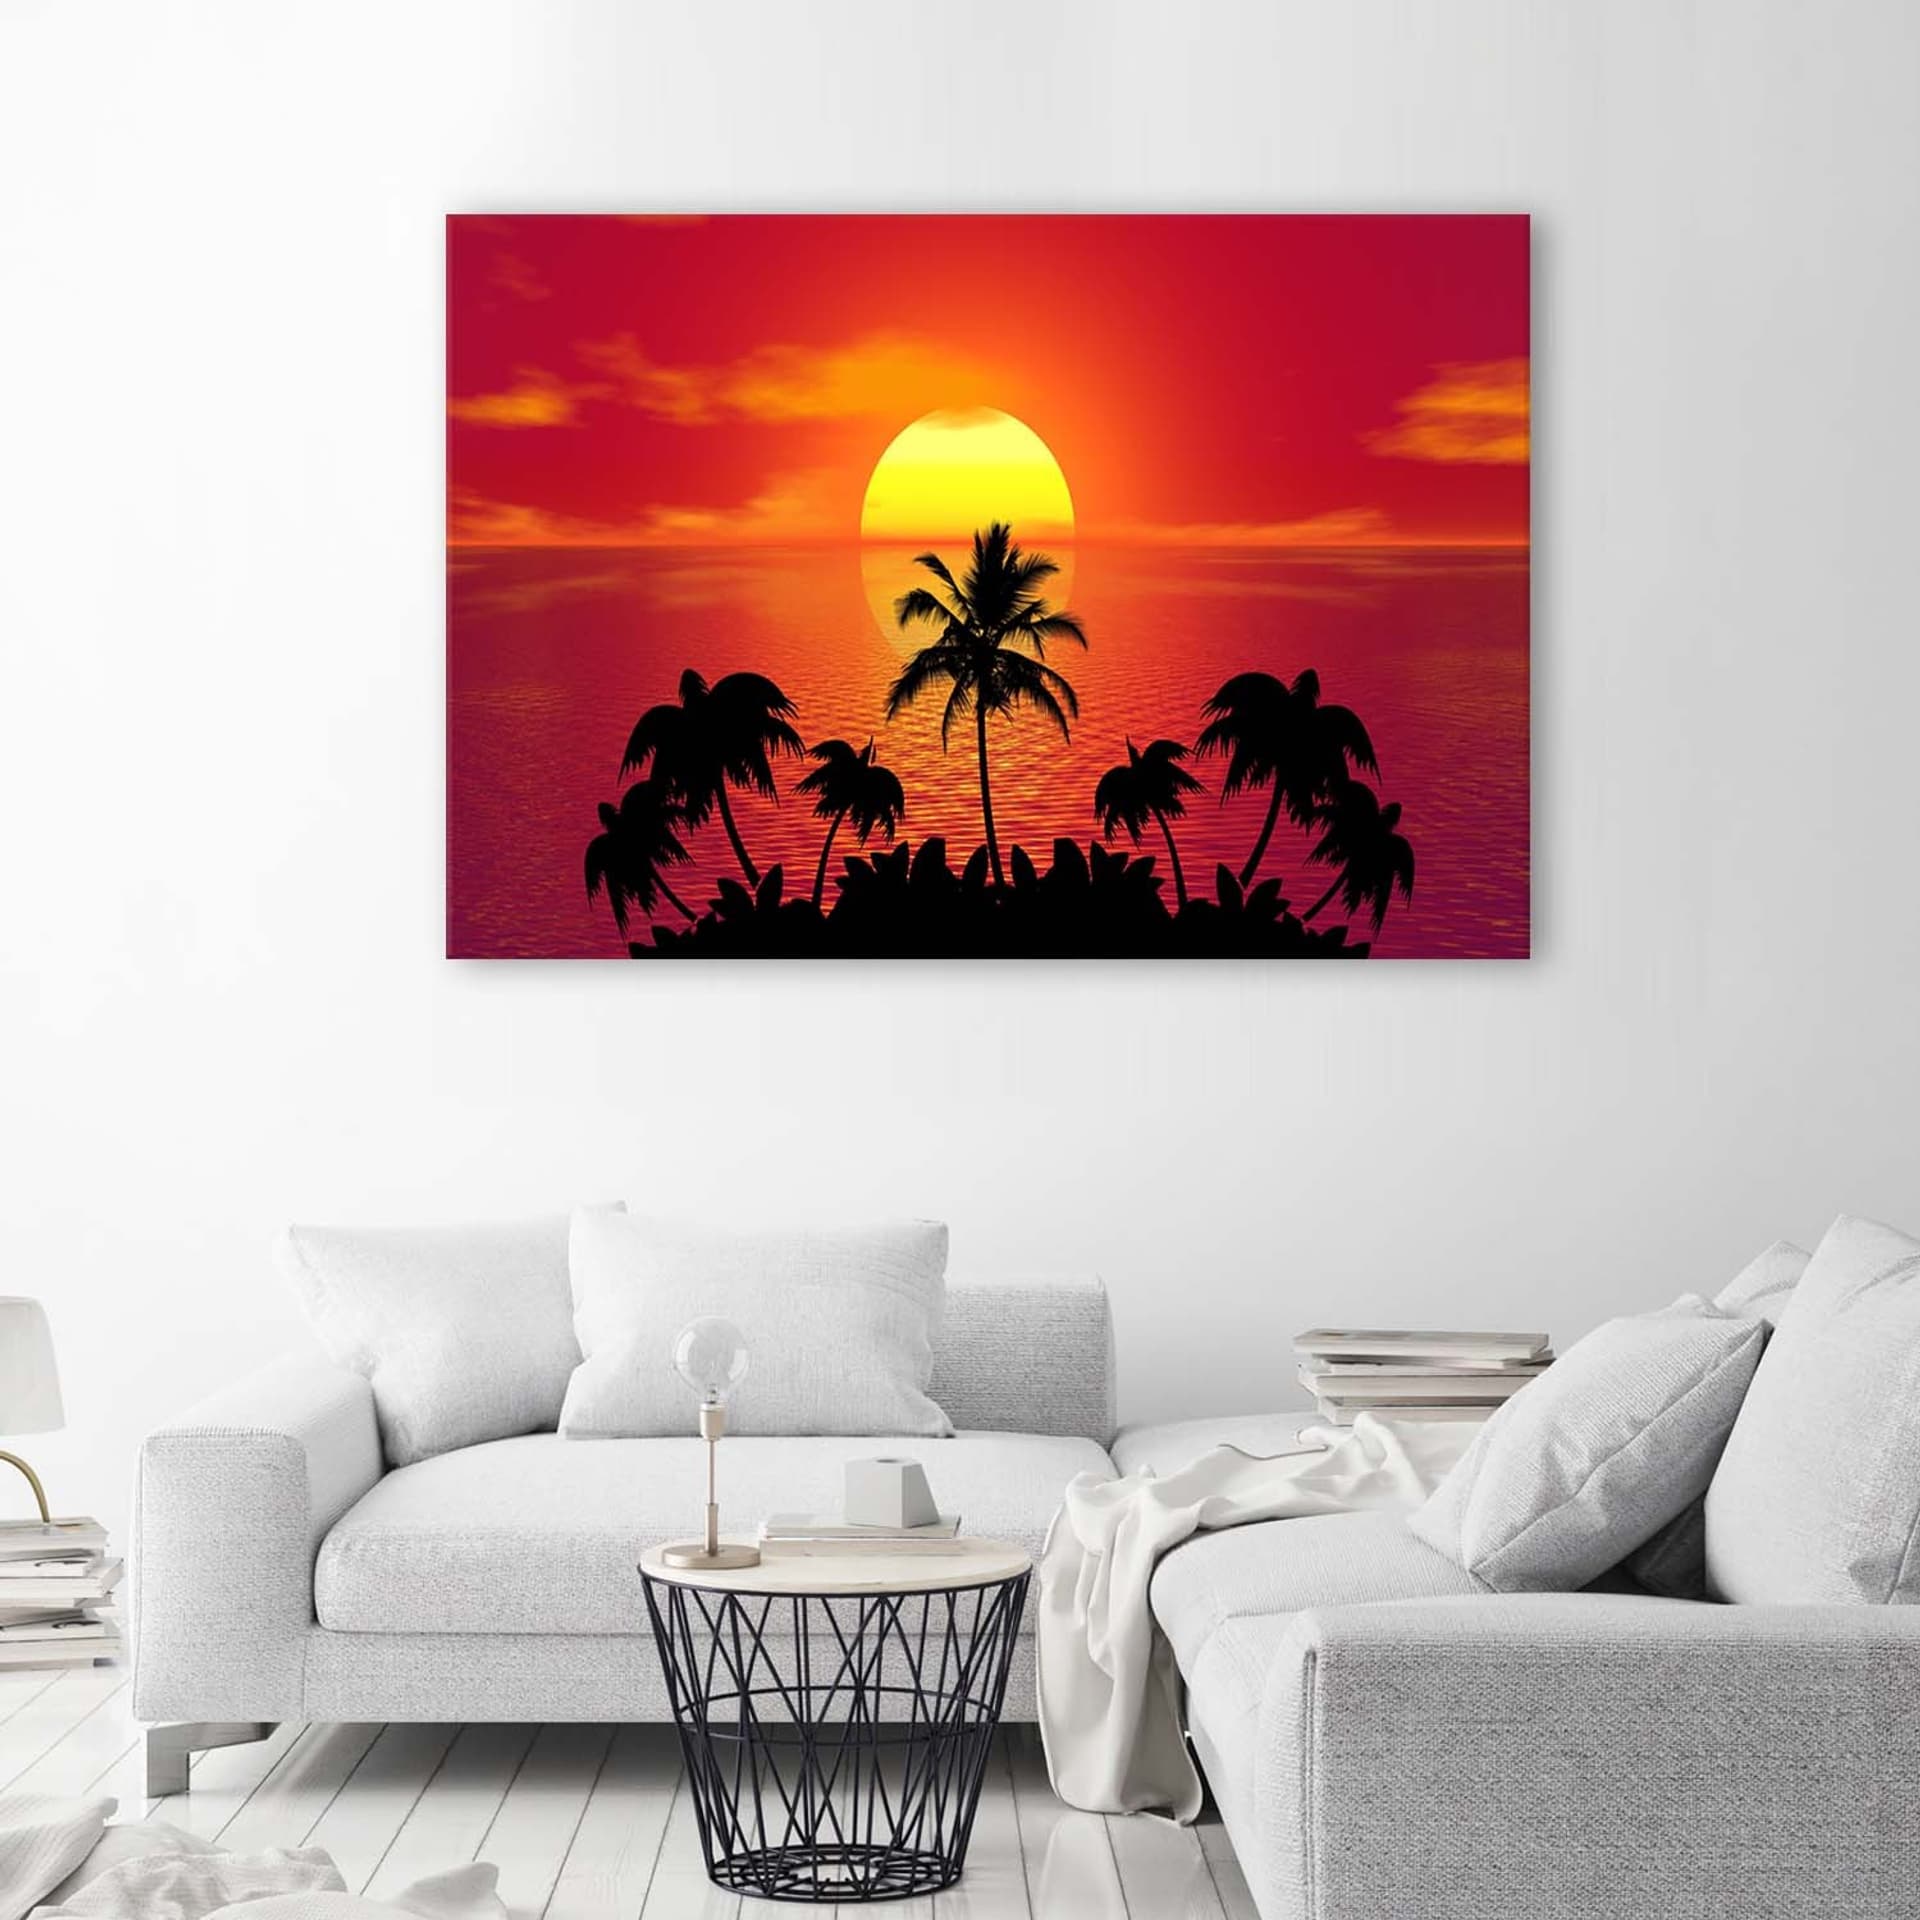 

Obraz na płótnie, Zachód słońca i palmy (Rozmiar 120x80)